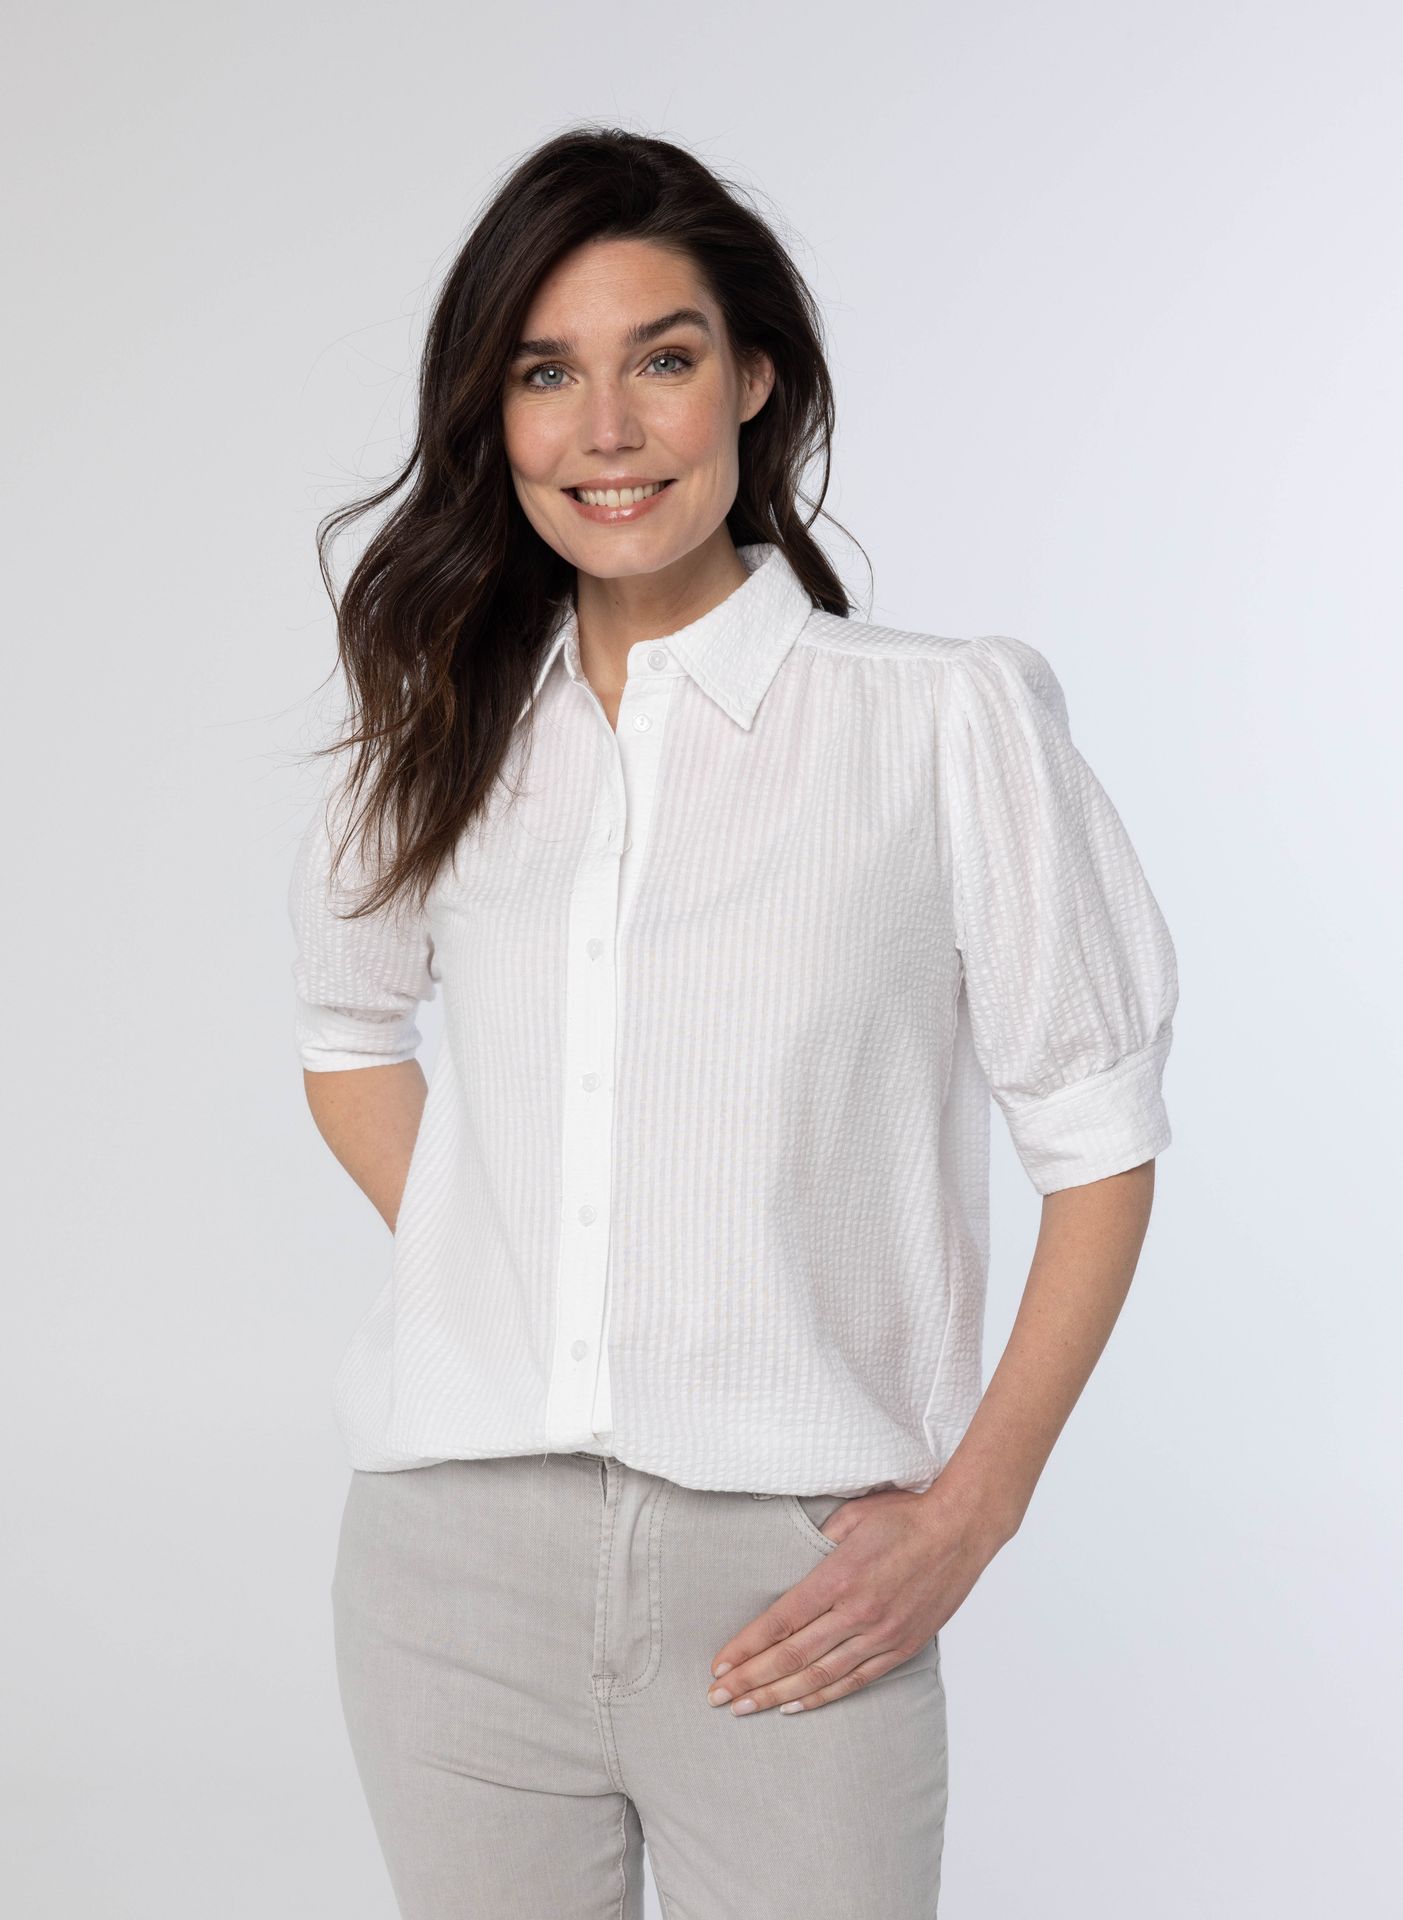 Norah Witte blouse white 213853-100